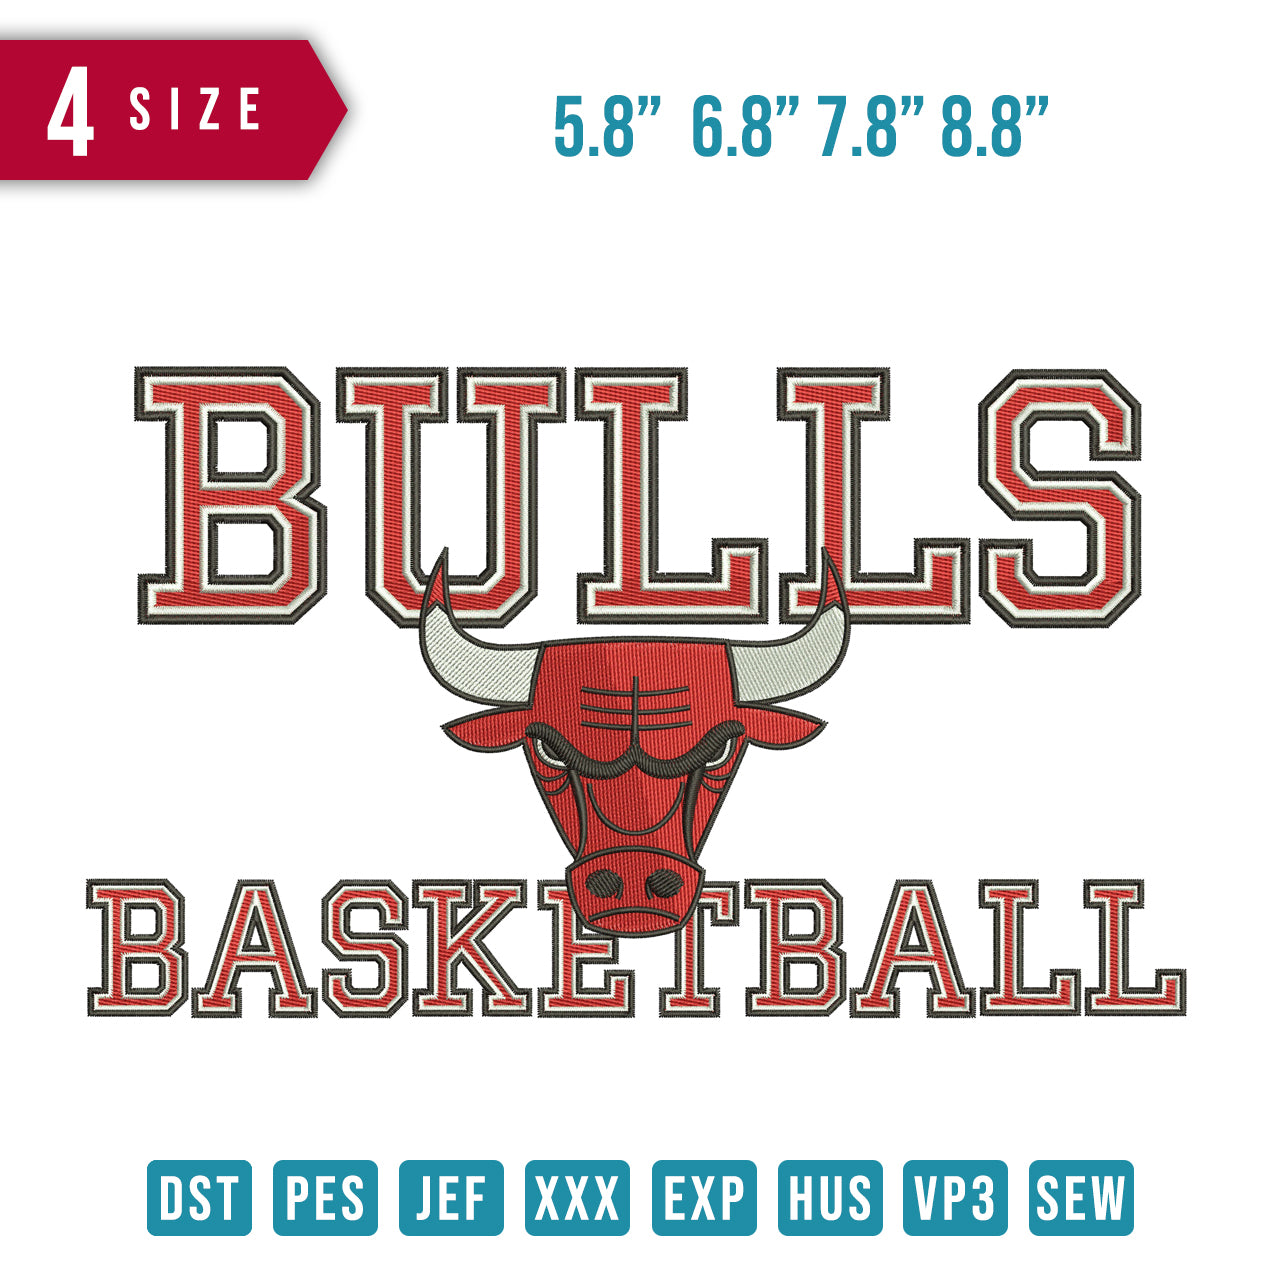 Bulls-Basketball